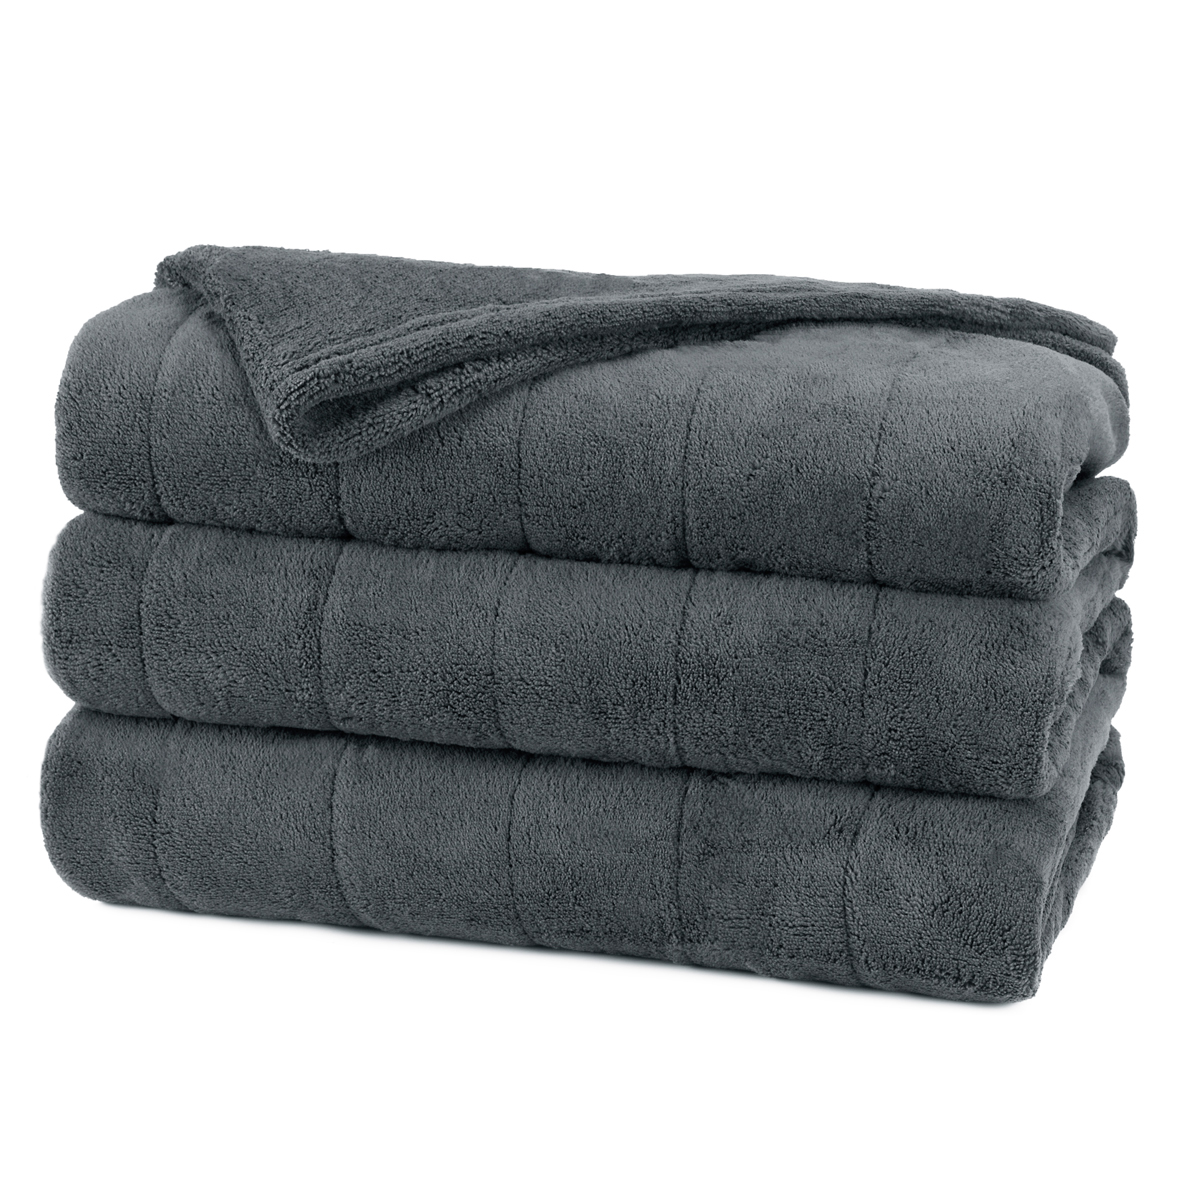 Microplush Twin Heated Blanket